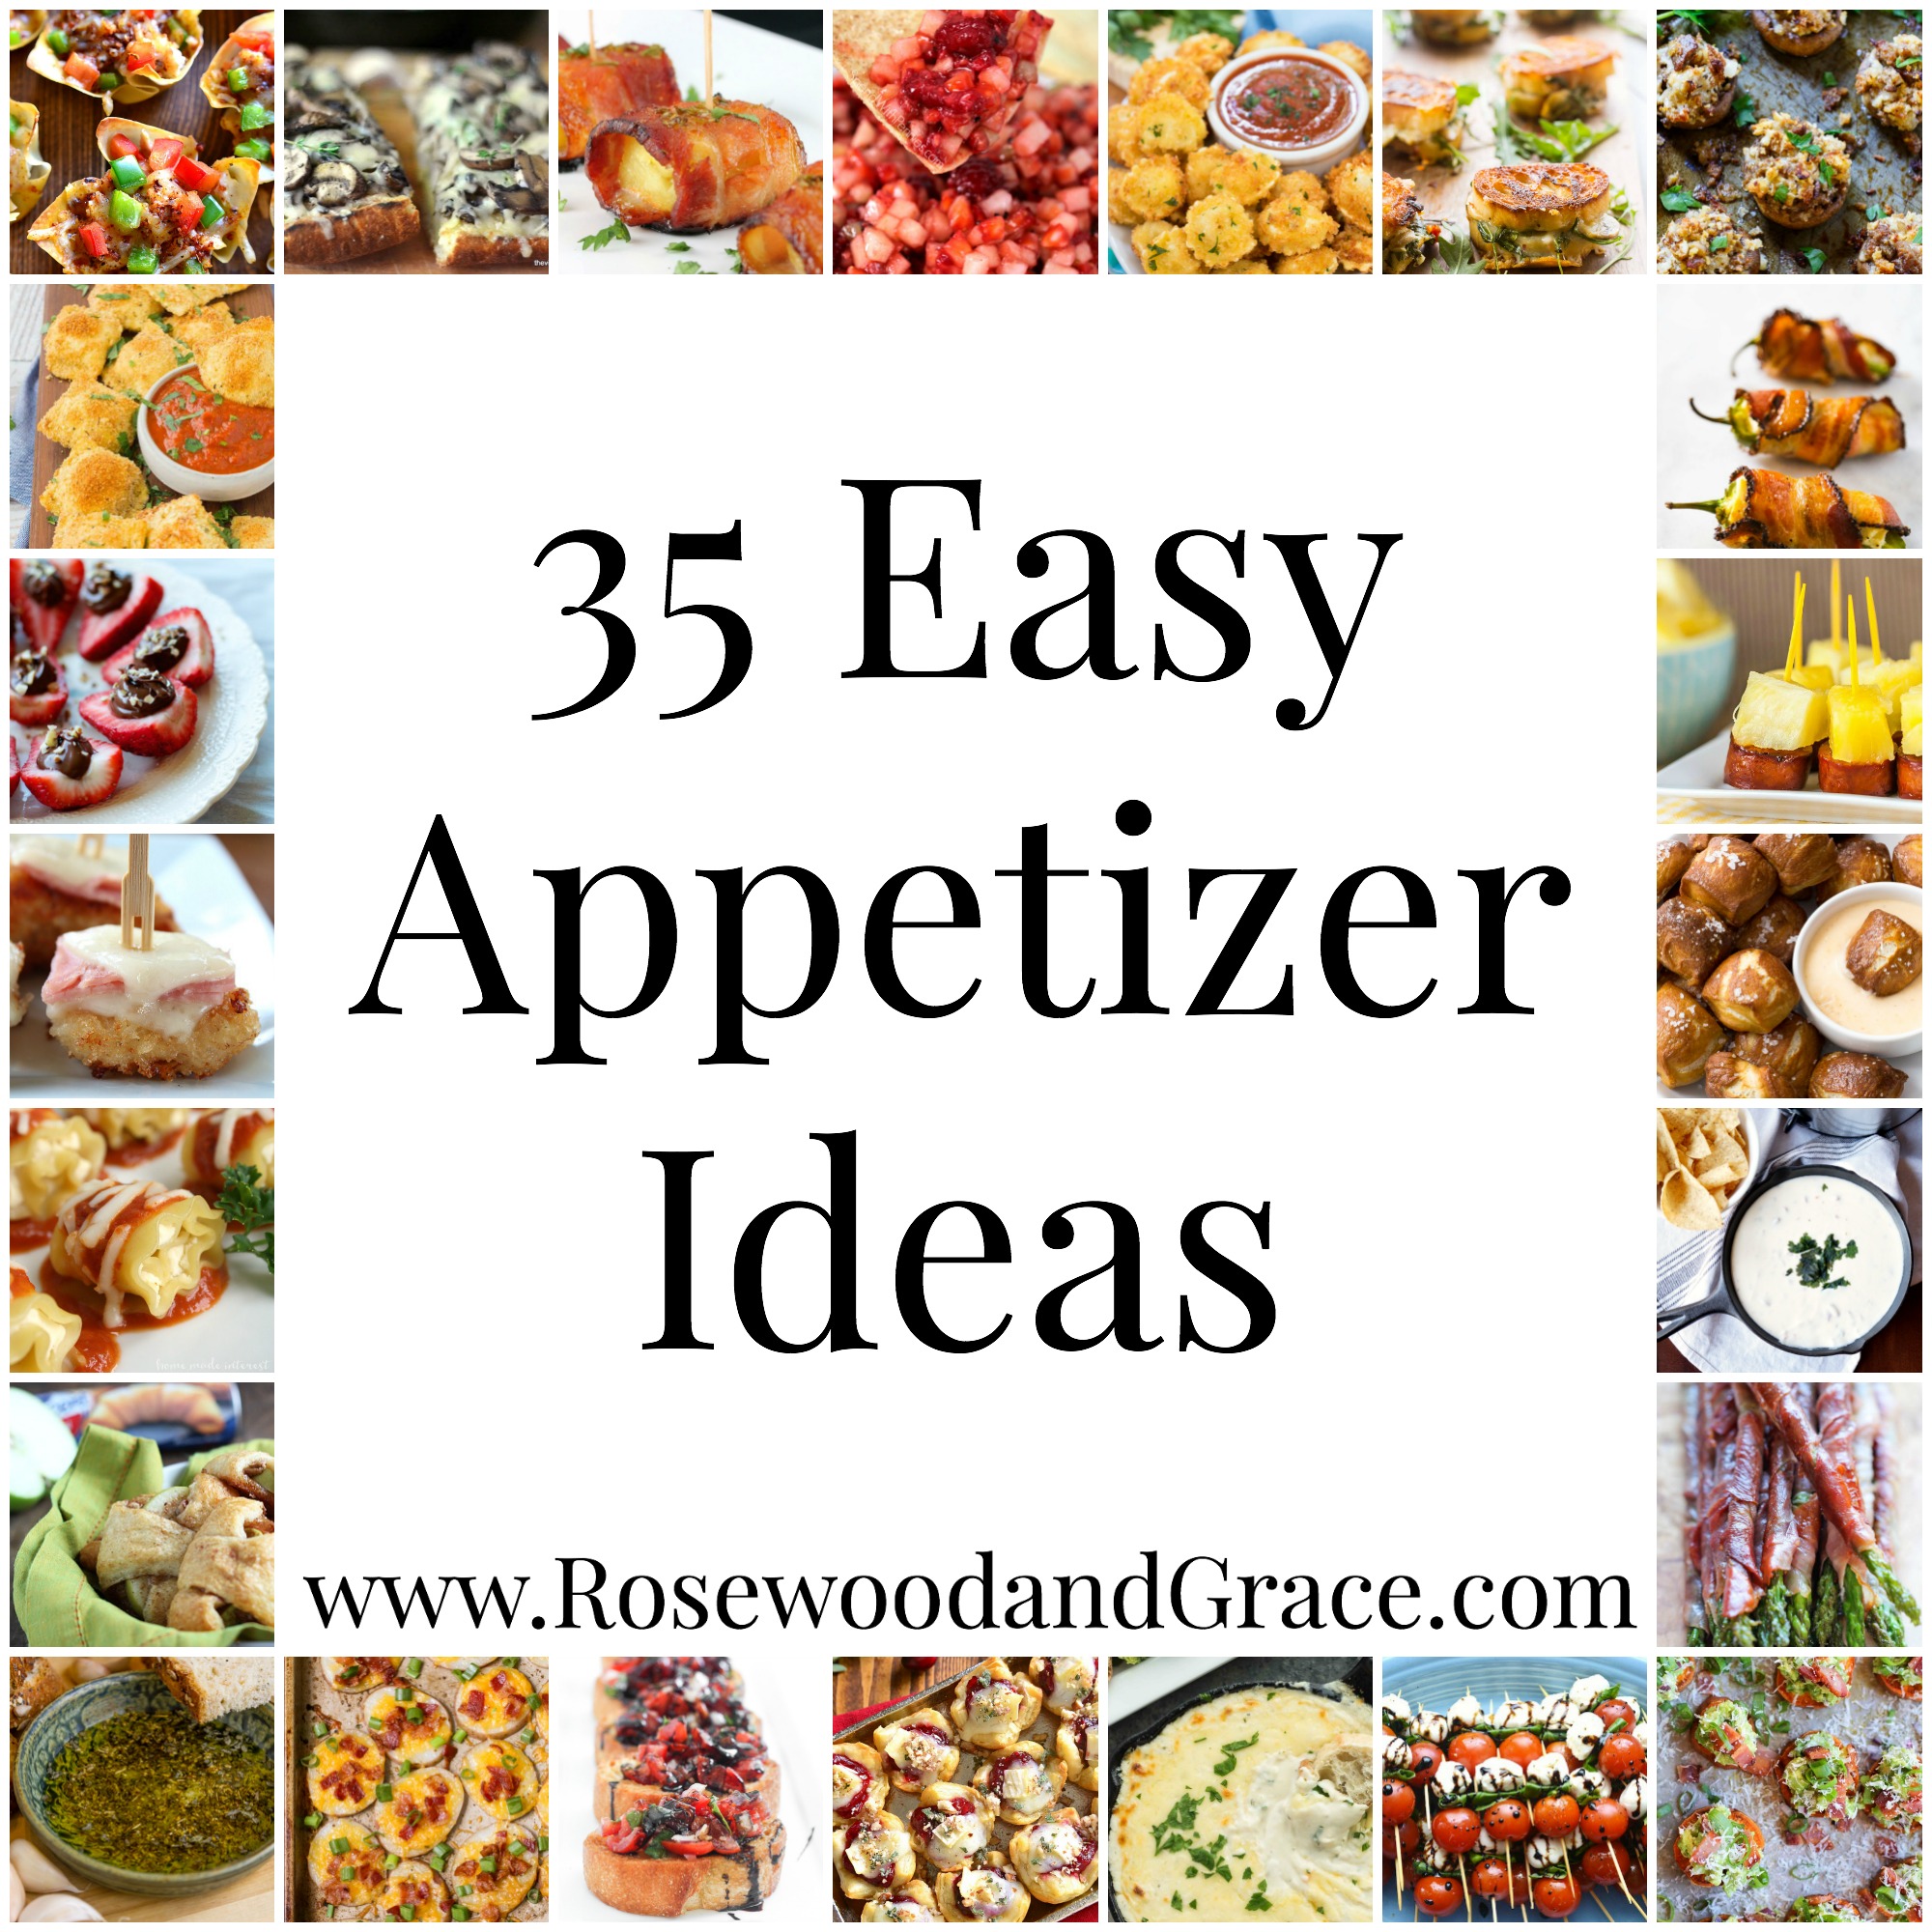 35 Easy Appetizer Ideas